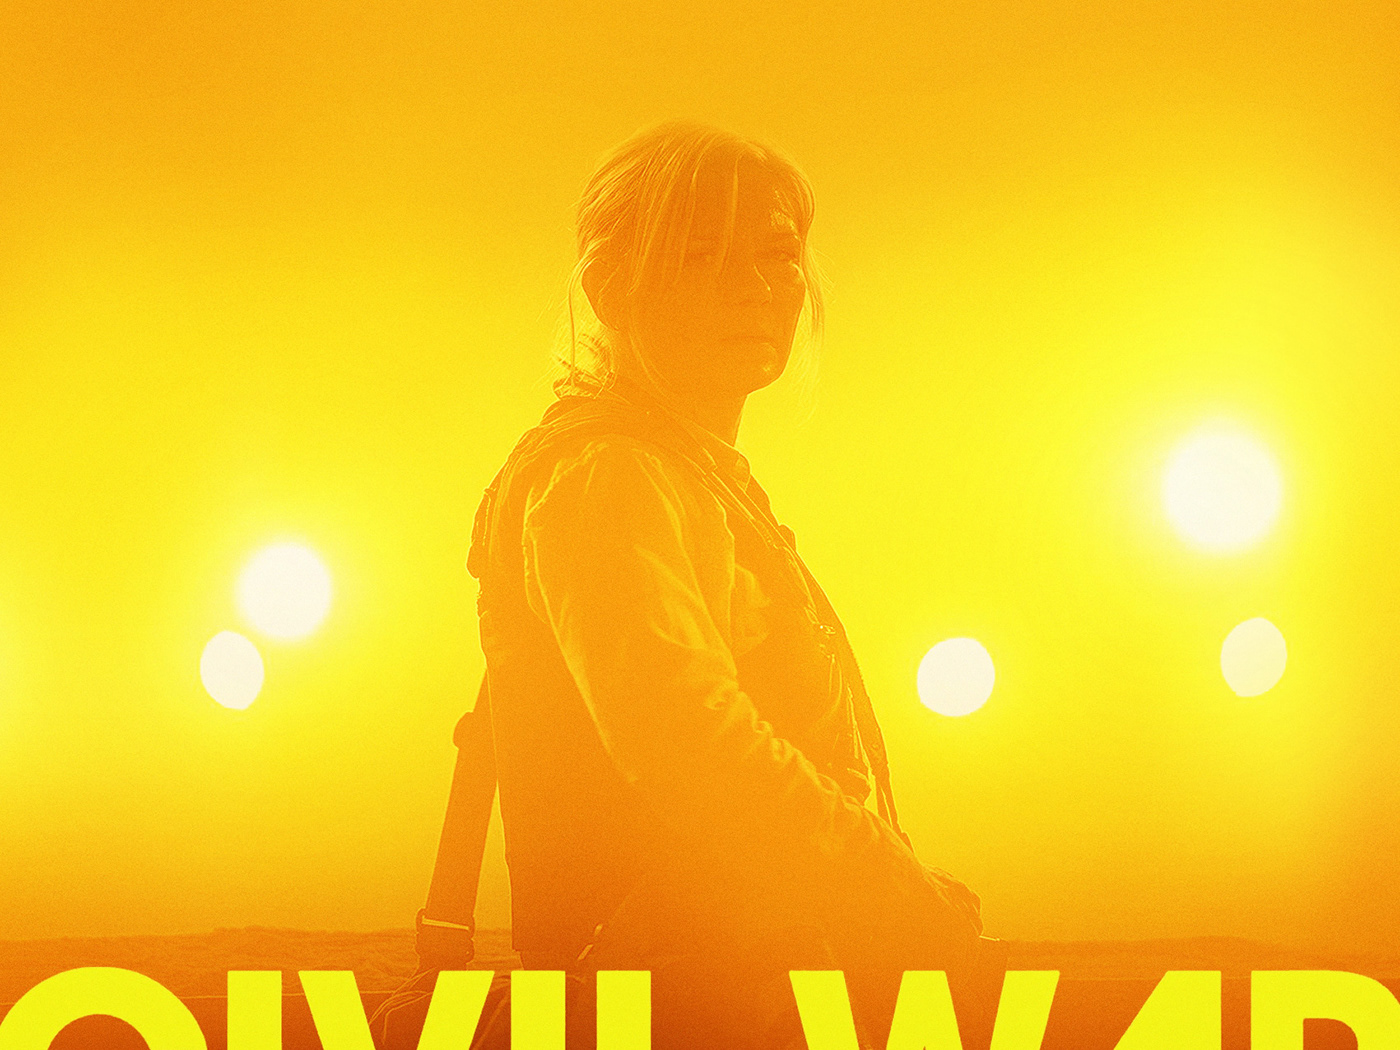 Alternative movie poster for Alex Garland’s ‘Civil War’.